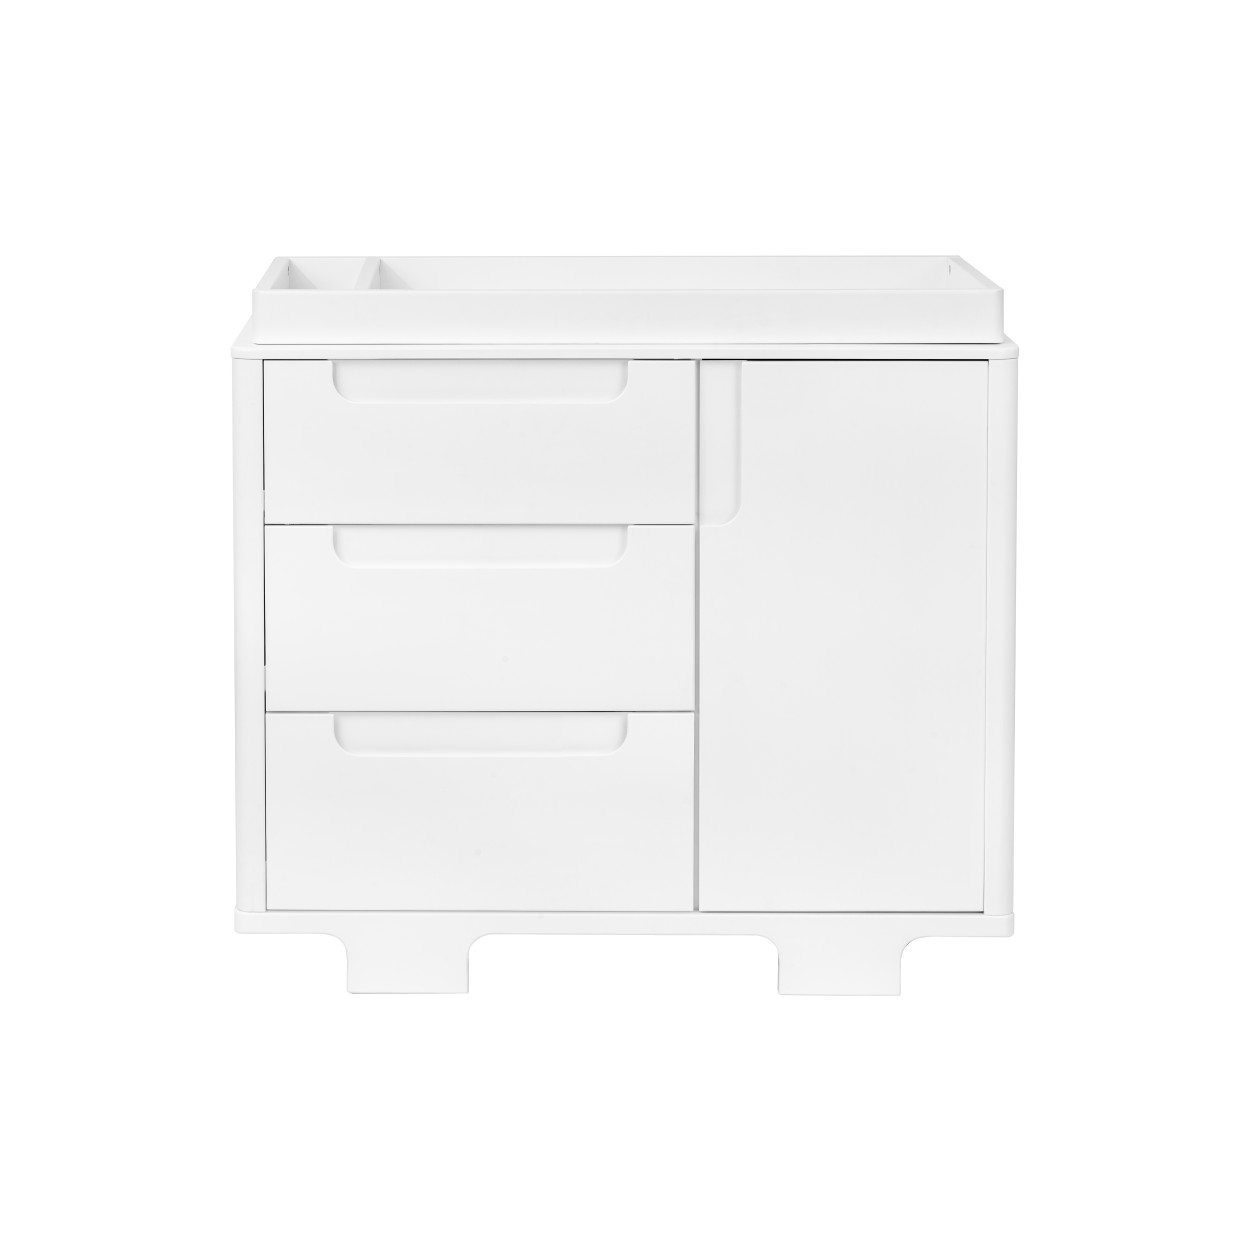 BabyLetto Yuzu 3-Drawer Changer Dresser - White